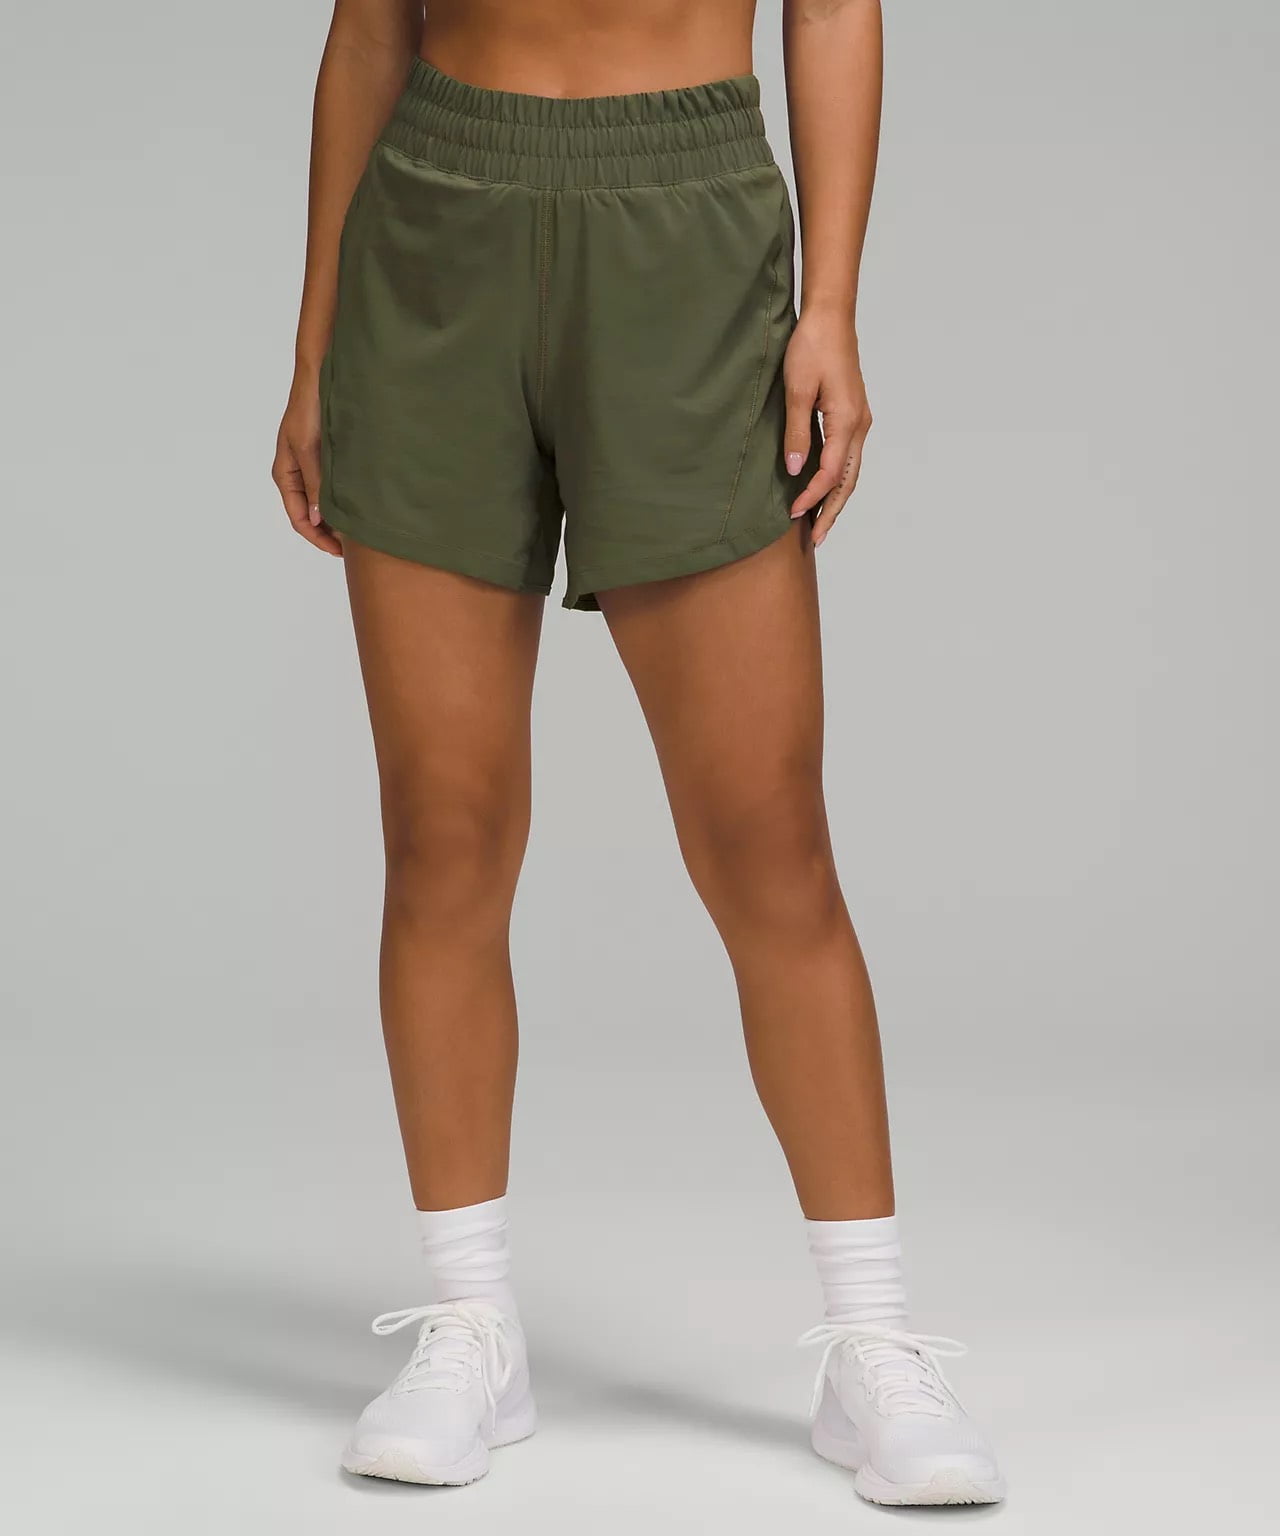 lululemon women's shorts - Track That High-Rise Lined Short 5 - lululemon long running shorts - longer inseam running shorts 2